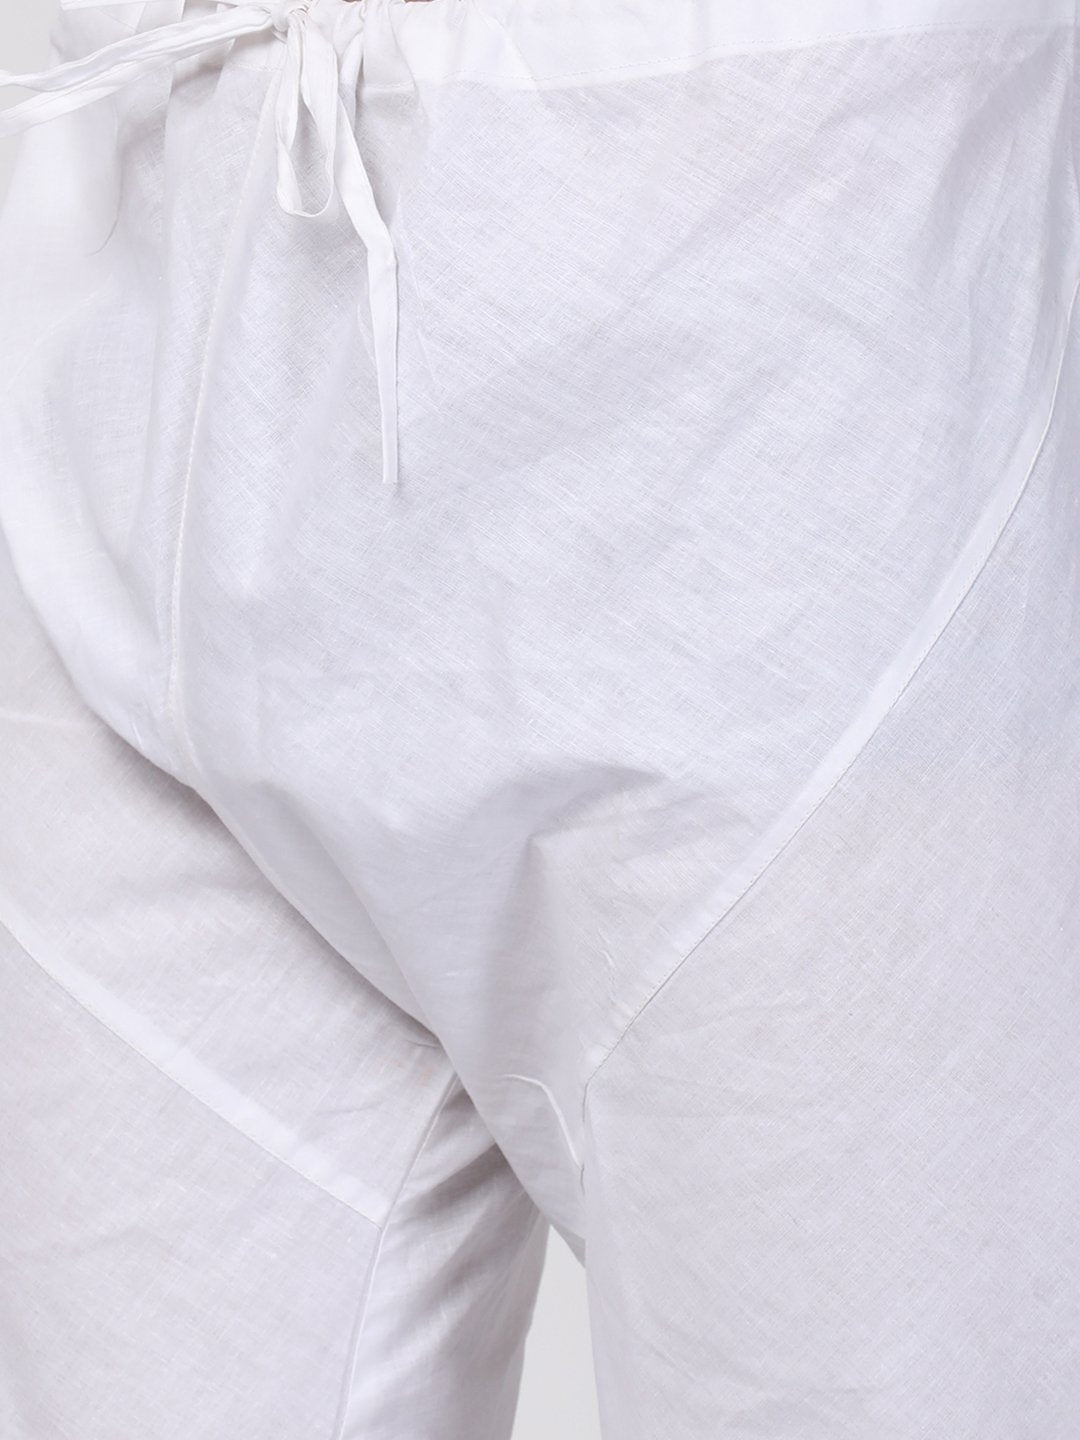 Men's Grey Cotton Blend Kurta and Pyjama Set